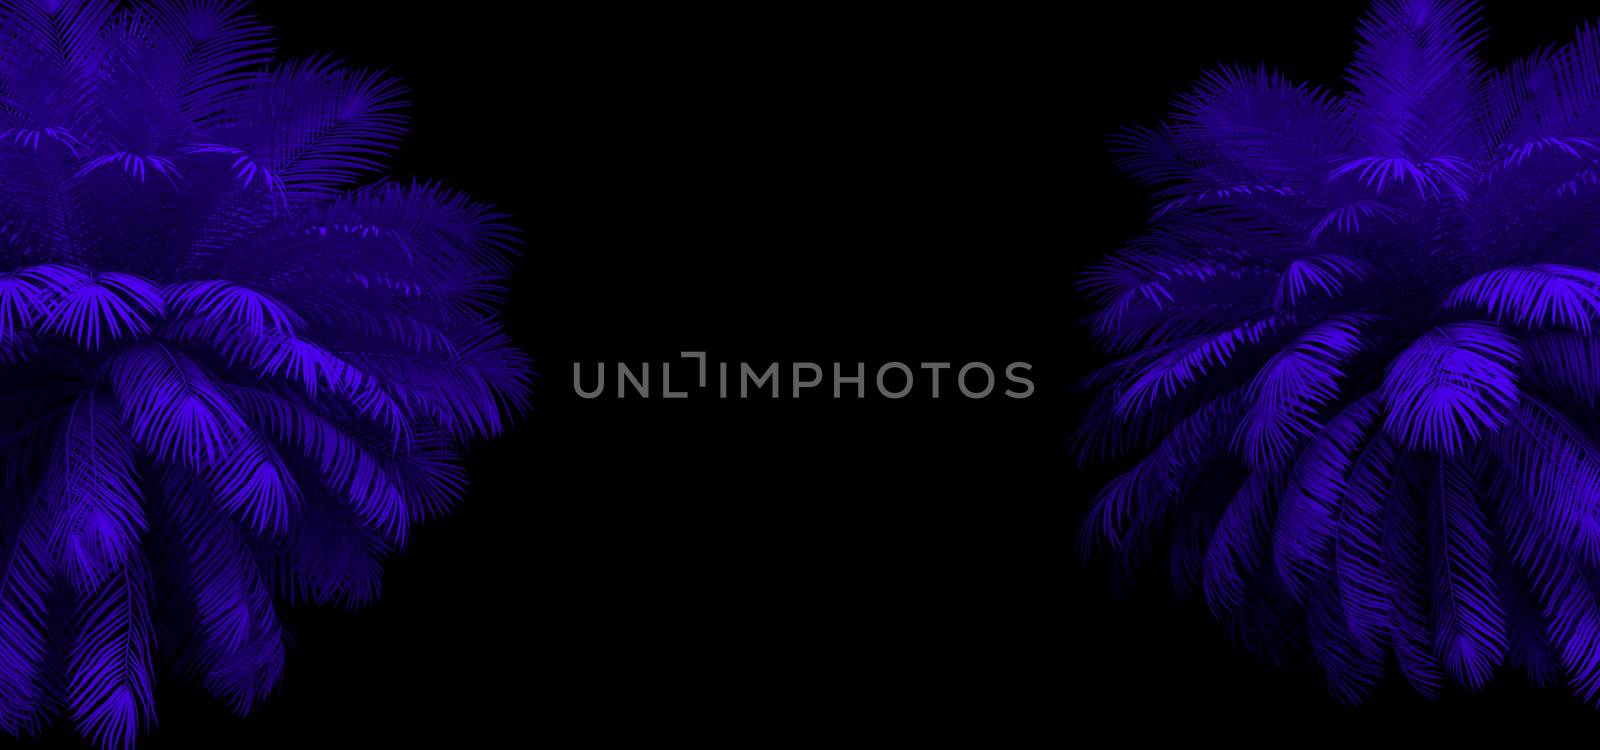 3d render of neon palm leaves on the black. Banner design. Retrowave, synthwave, vaporwave illustration. by Shanvood